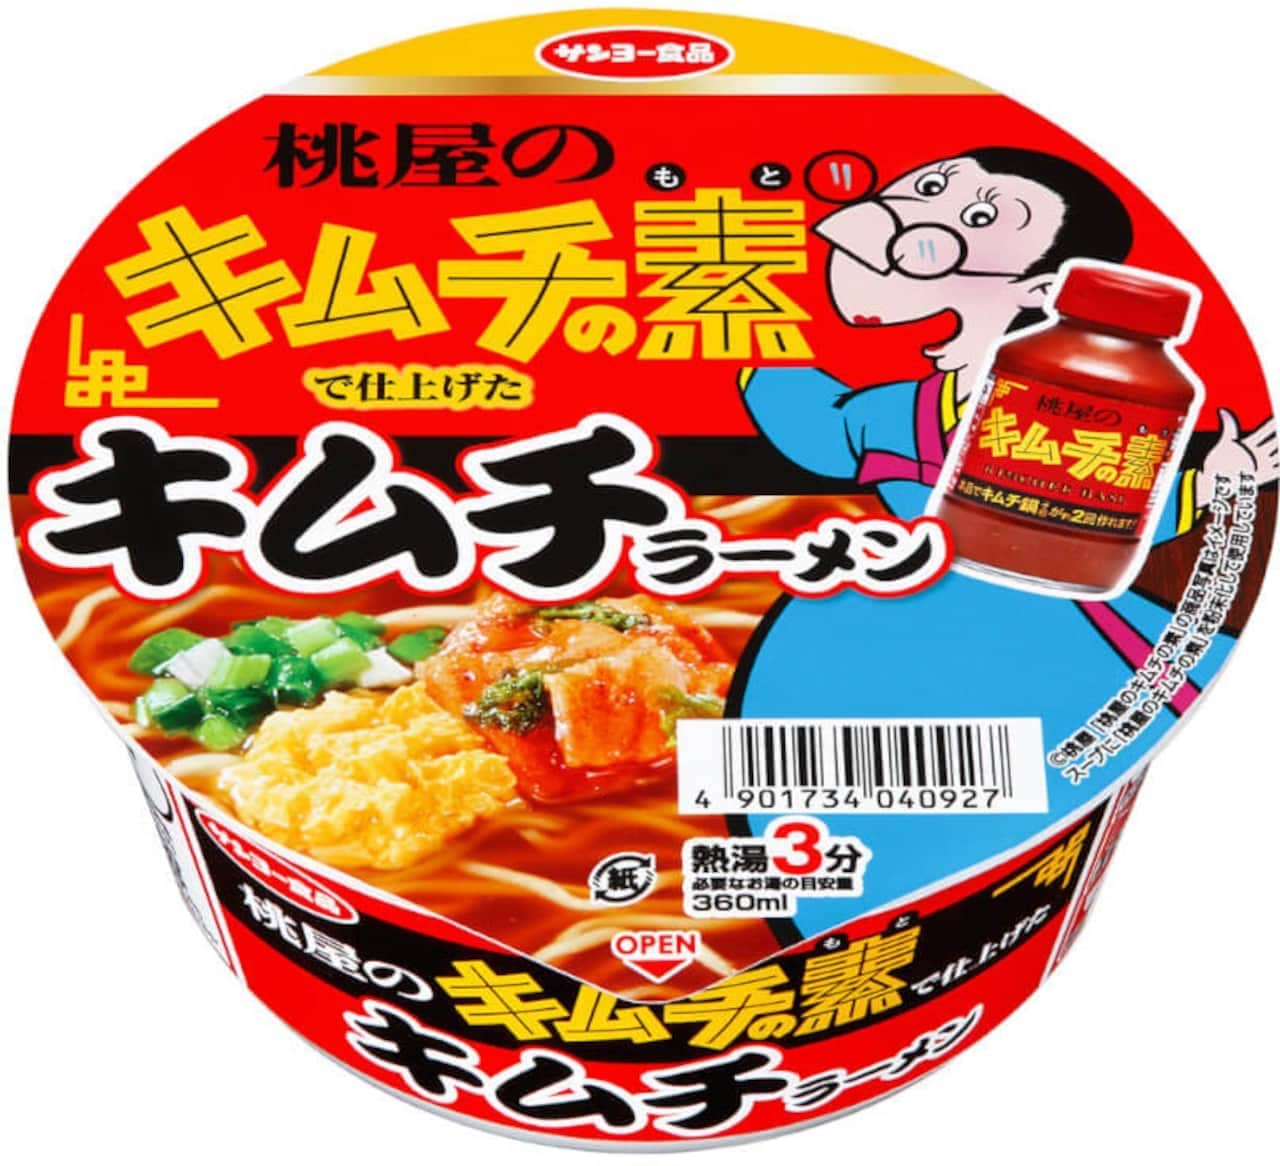 Sanyo Foods "Meat Dashi Udon Finished with" Momoya no Tsuyu ""